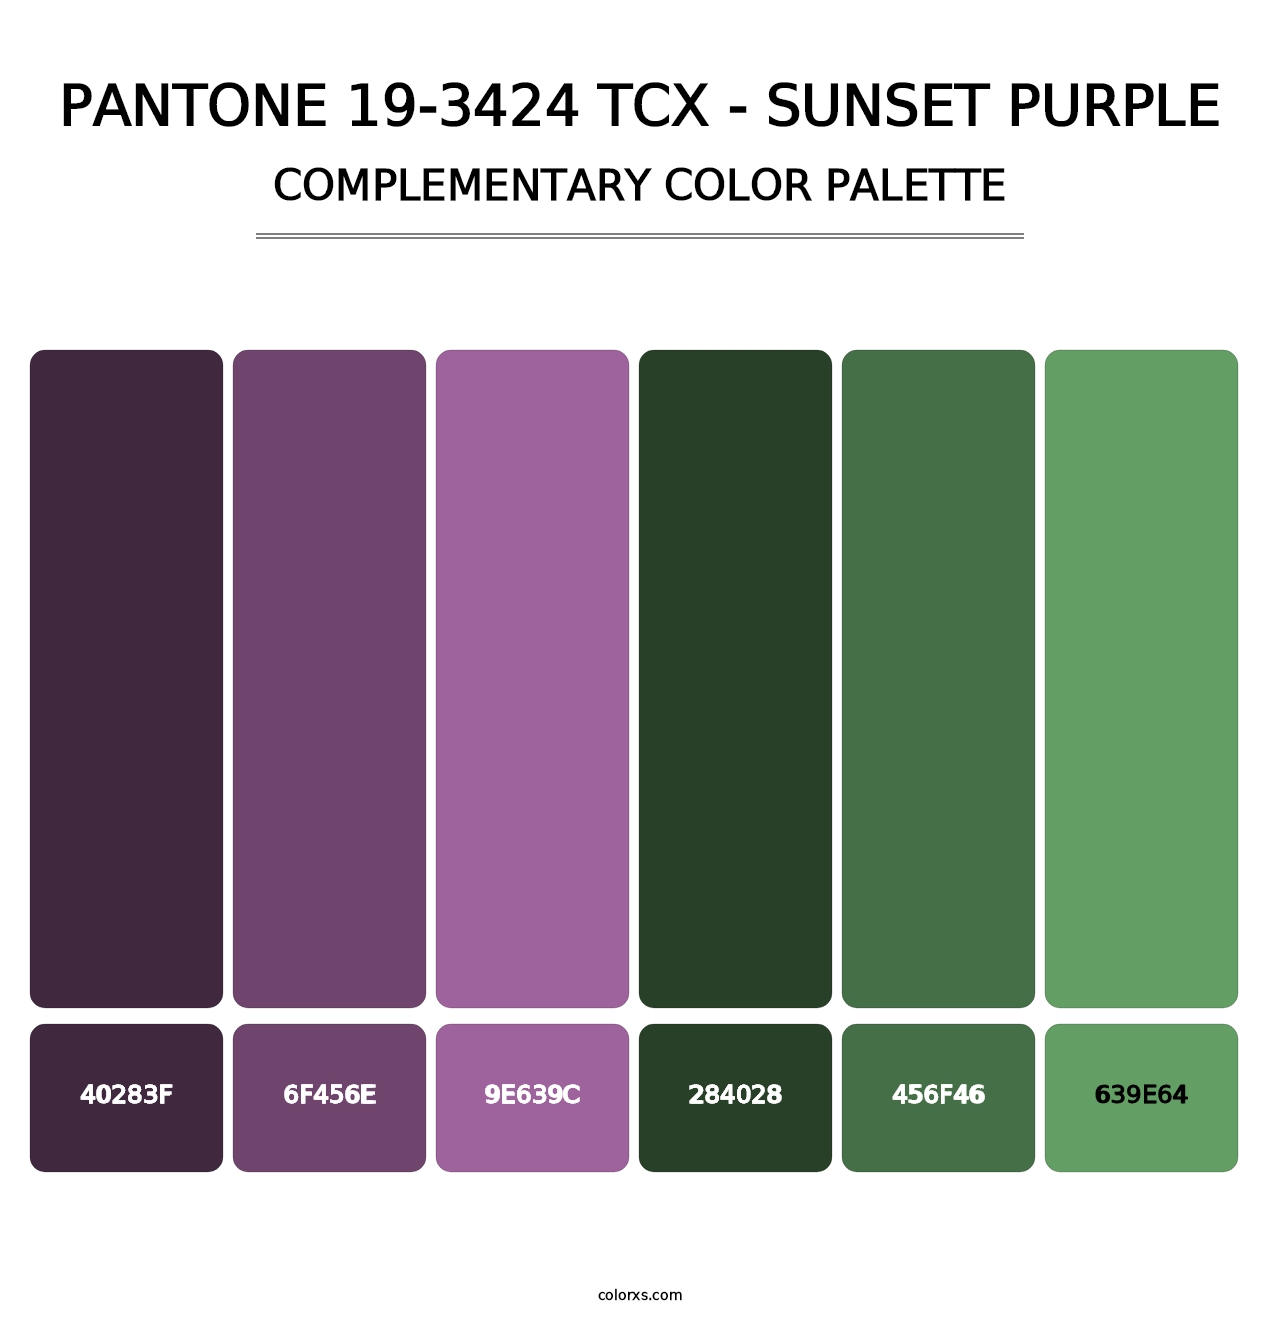 PANTONE 19-3424 TCX - Sunset Purple - Complementary Color Palette